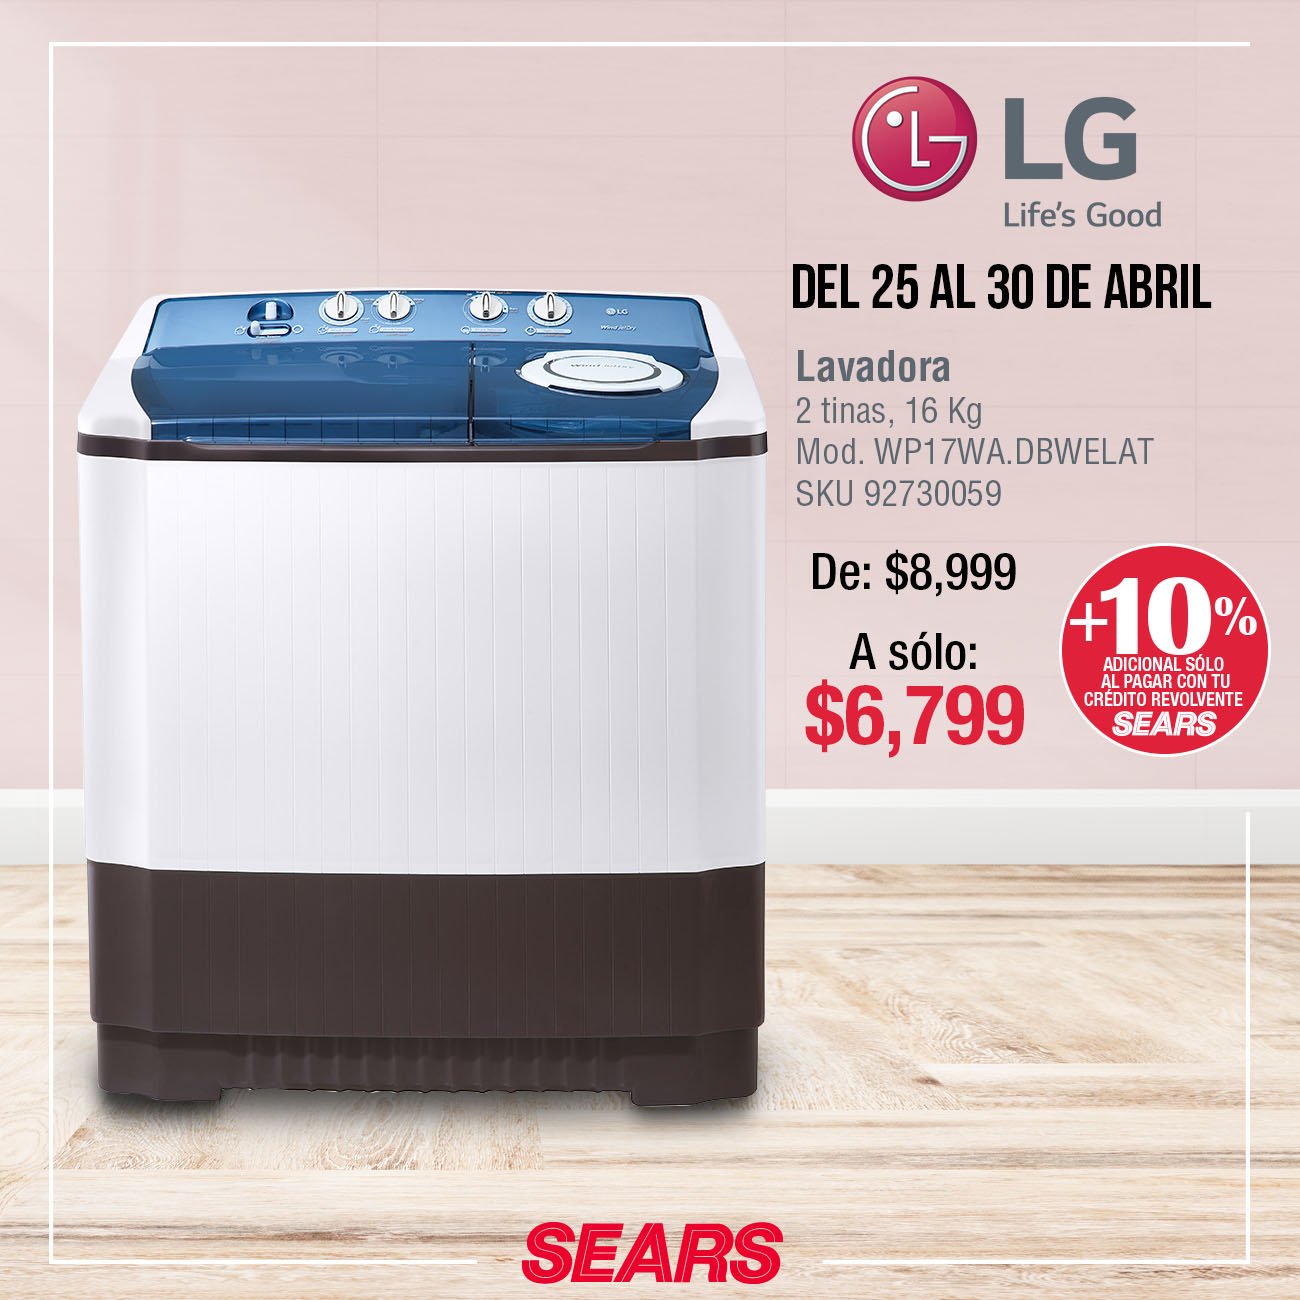 Sears México on "¿Buscas a una a un súper ¡Esta promoción te encantará! #SearsMeEntiende Vigencia del 25 al 30 de abril de 2019. *Consulta bases en tienda. https://t.co/sX2qk1e2Zo" /